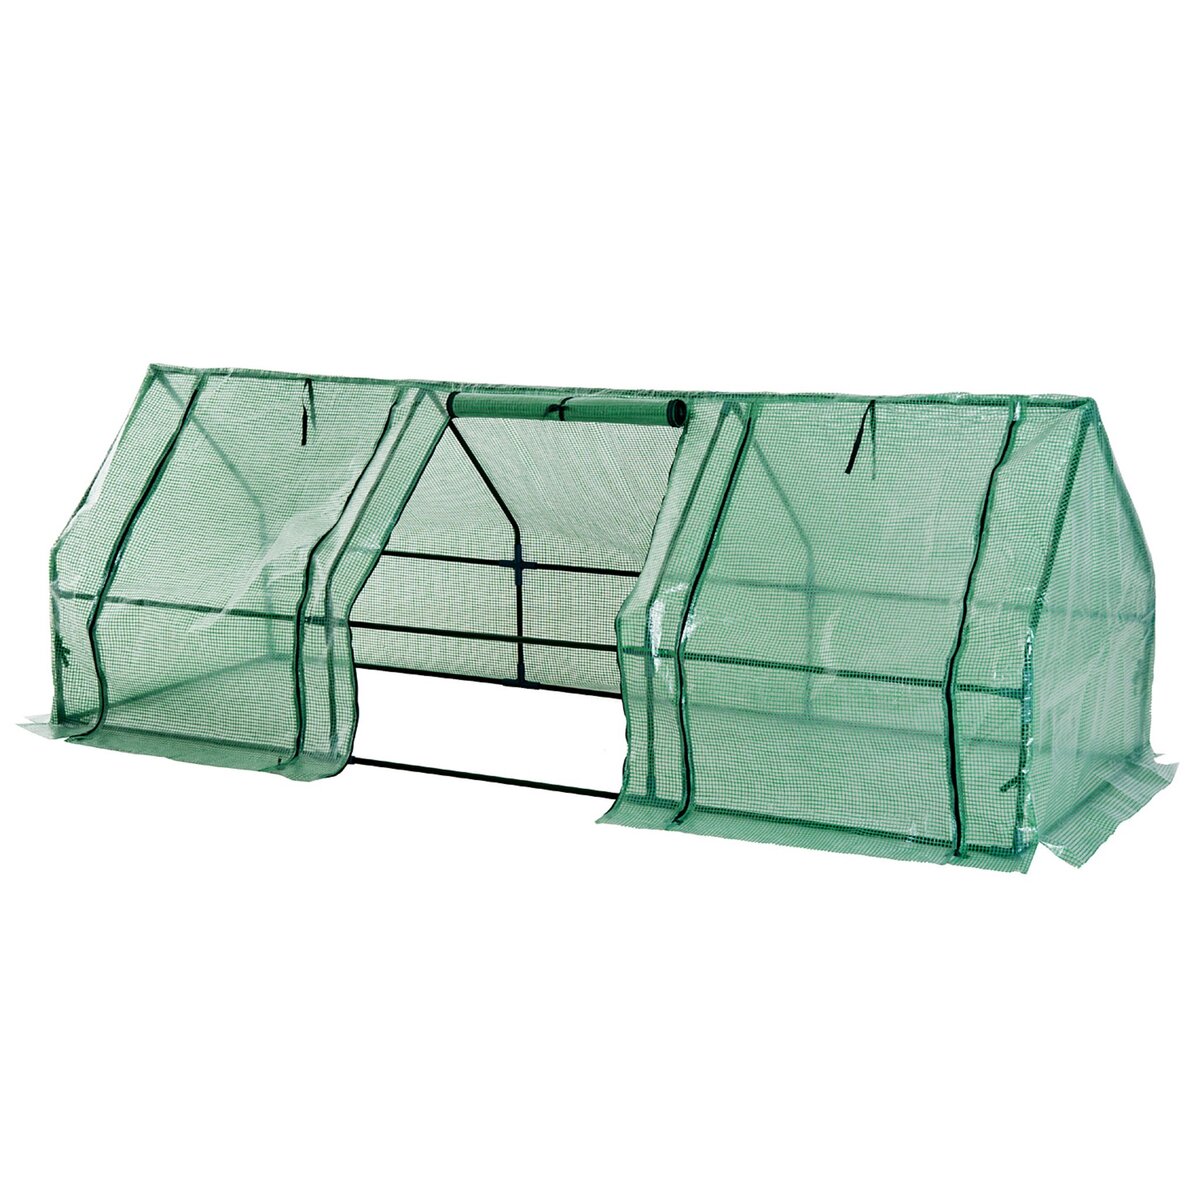 HOMCOM Mini serre de jardin 270L x 90l x 90H cm acier PE haute densité 140 g/m² anti-UV 3 fenêtres avec zip enroulables vert